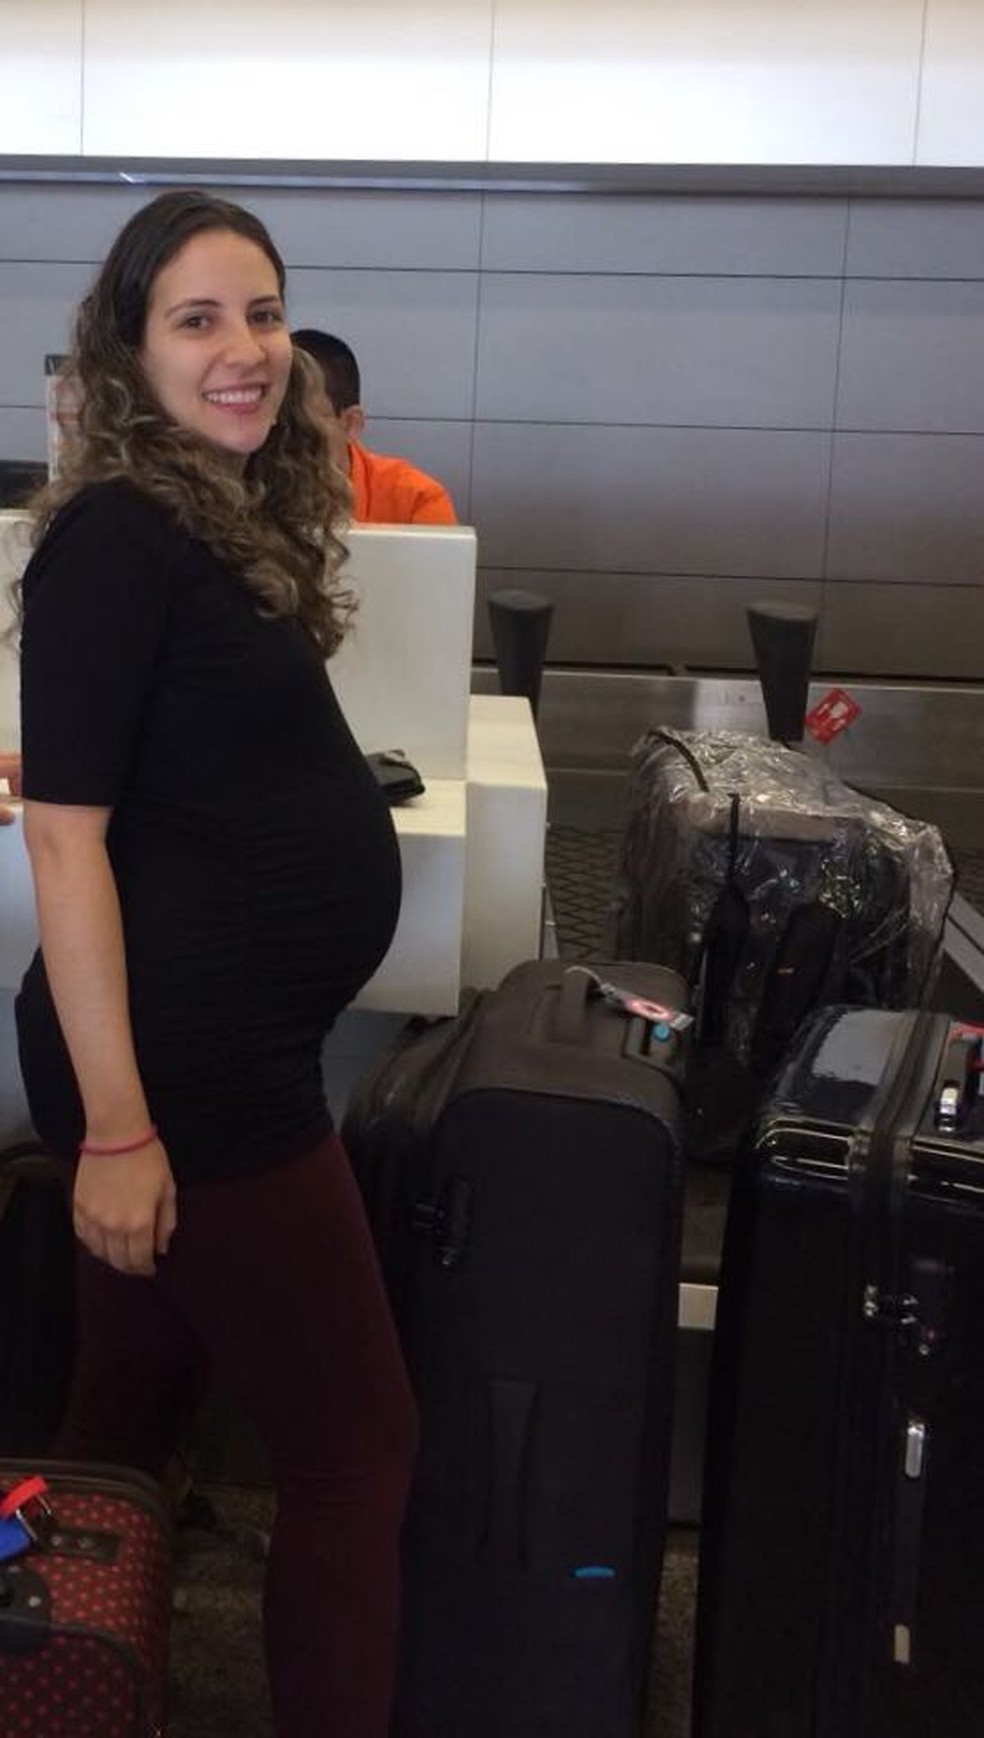 foto 5 patricia broda gravidez com orientacao e sinal verde a rotina inclusive de viagens - Os mitos que podem trazer insegurança - e riscos - à gravidez